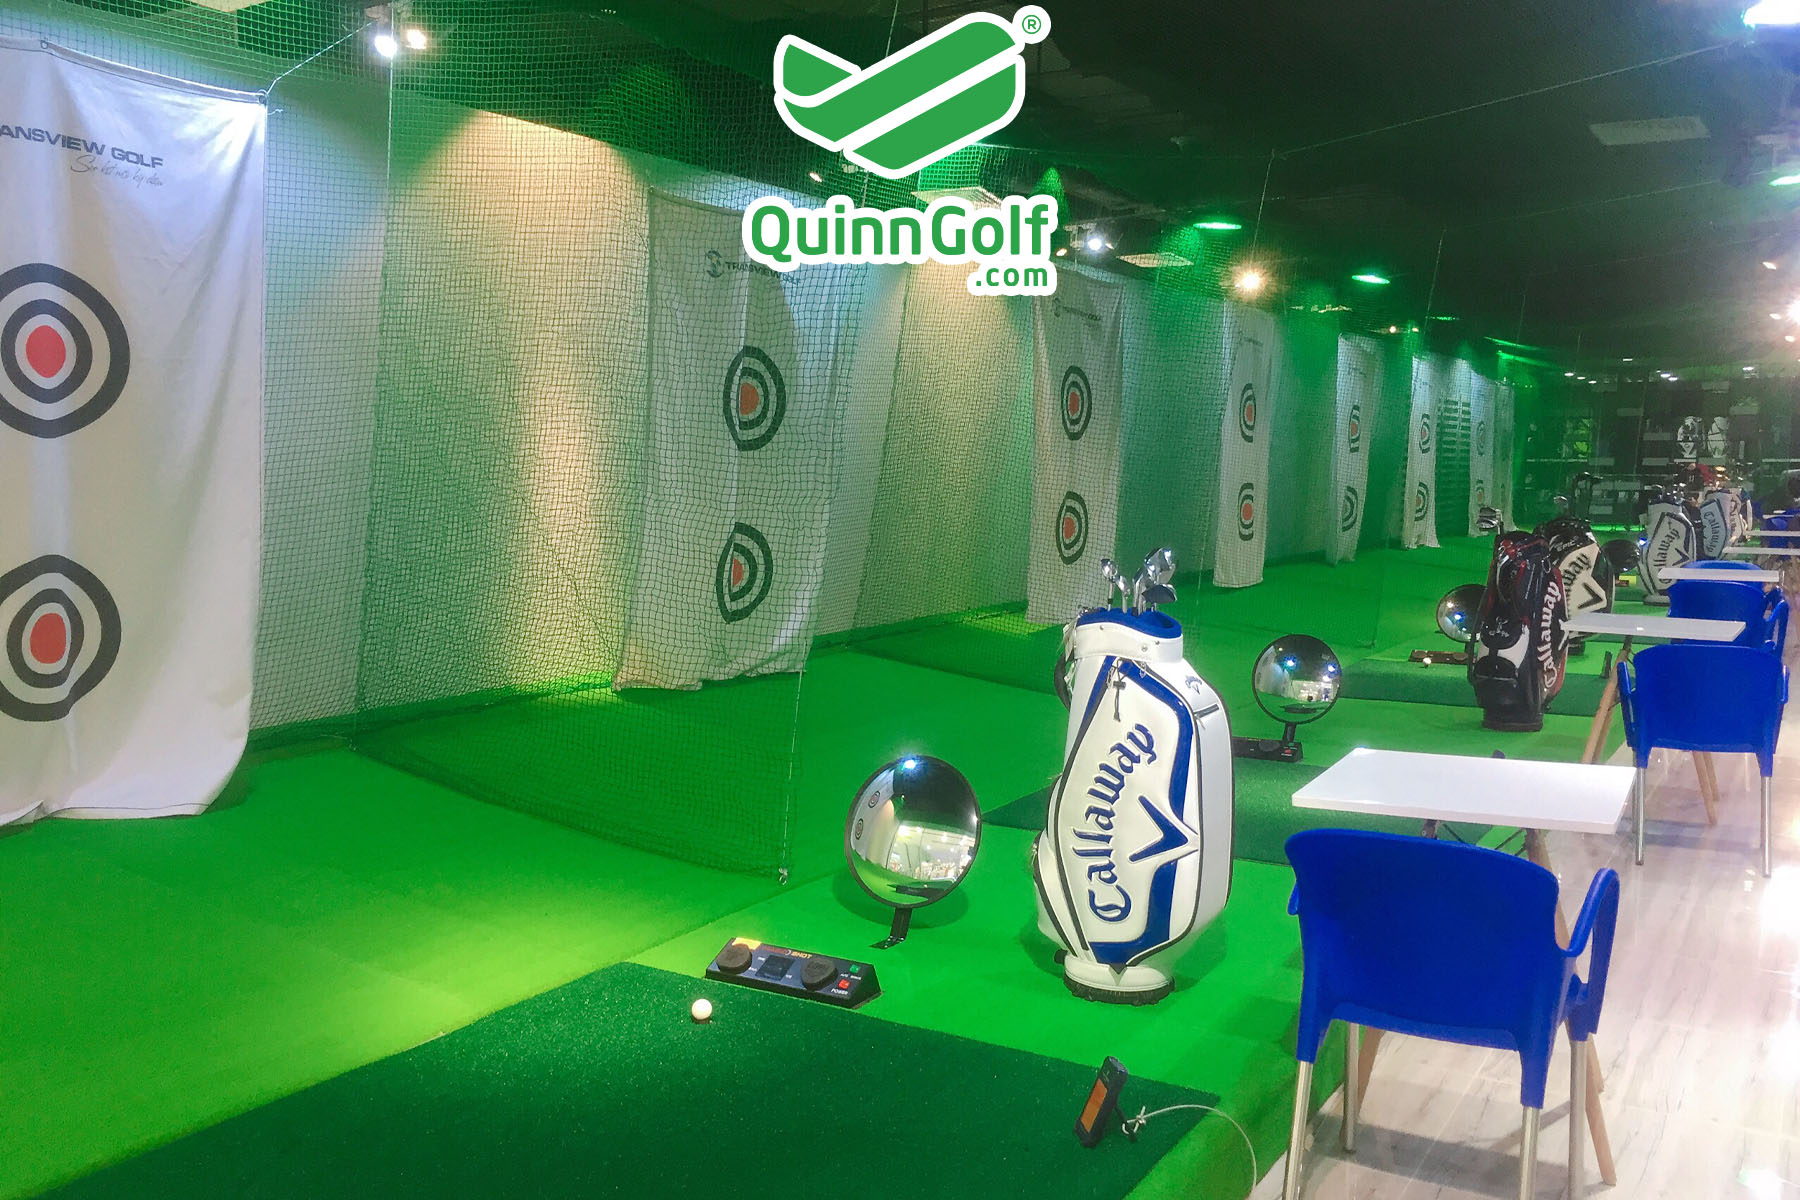 Quinn Golf - Thi công sân Golf 3D giá hạt dẻ!